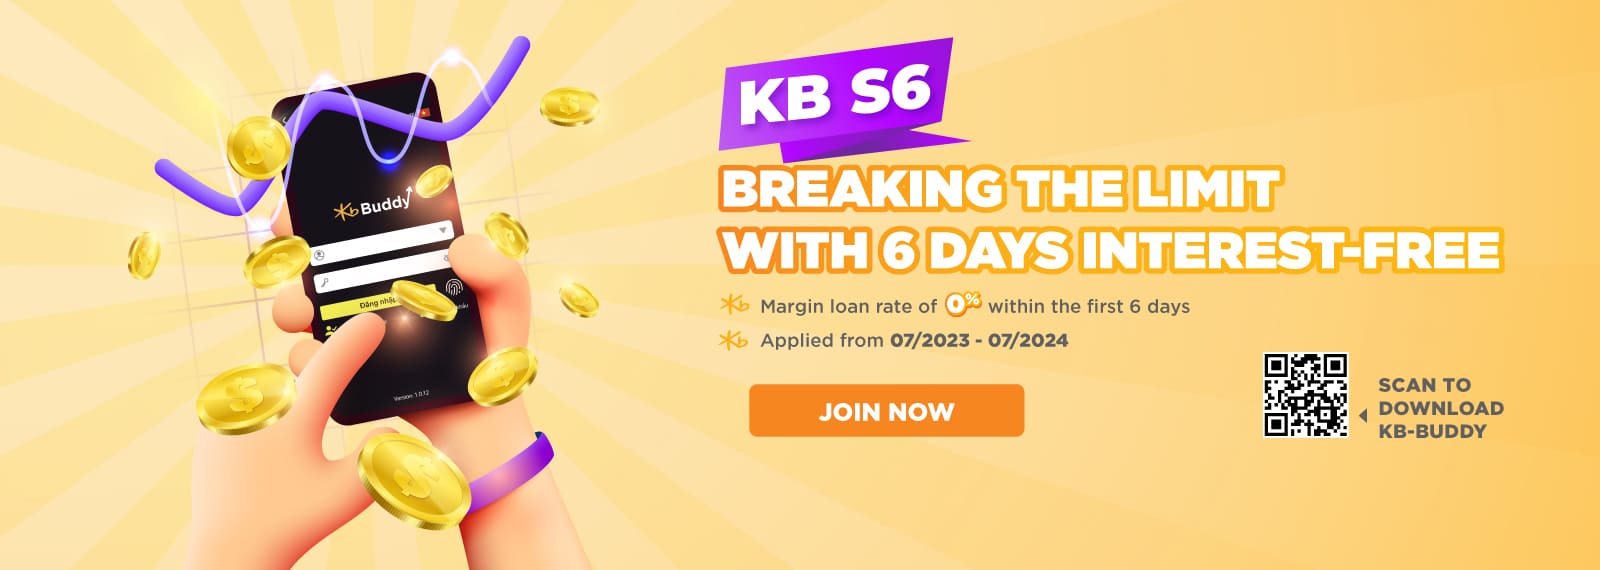 KB S6